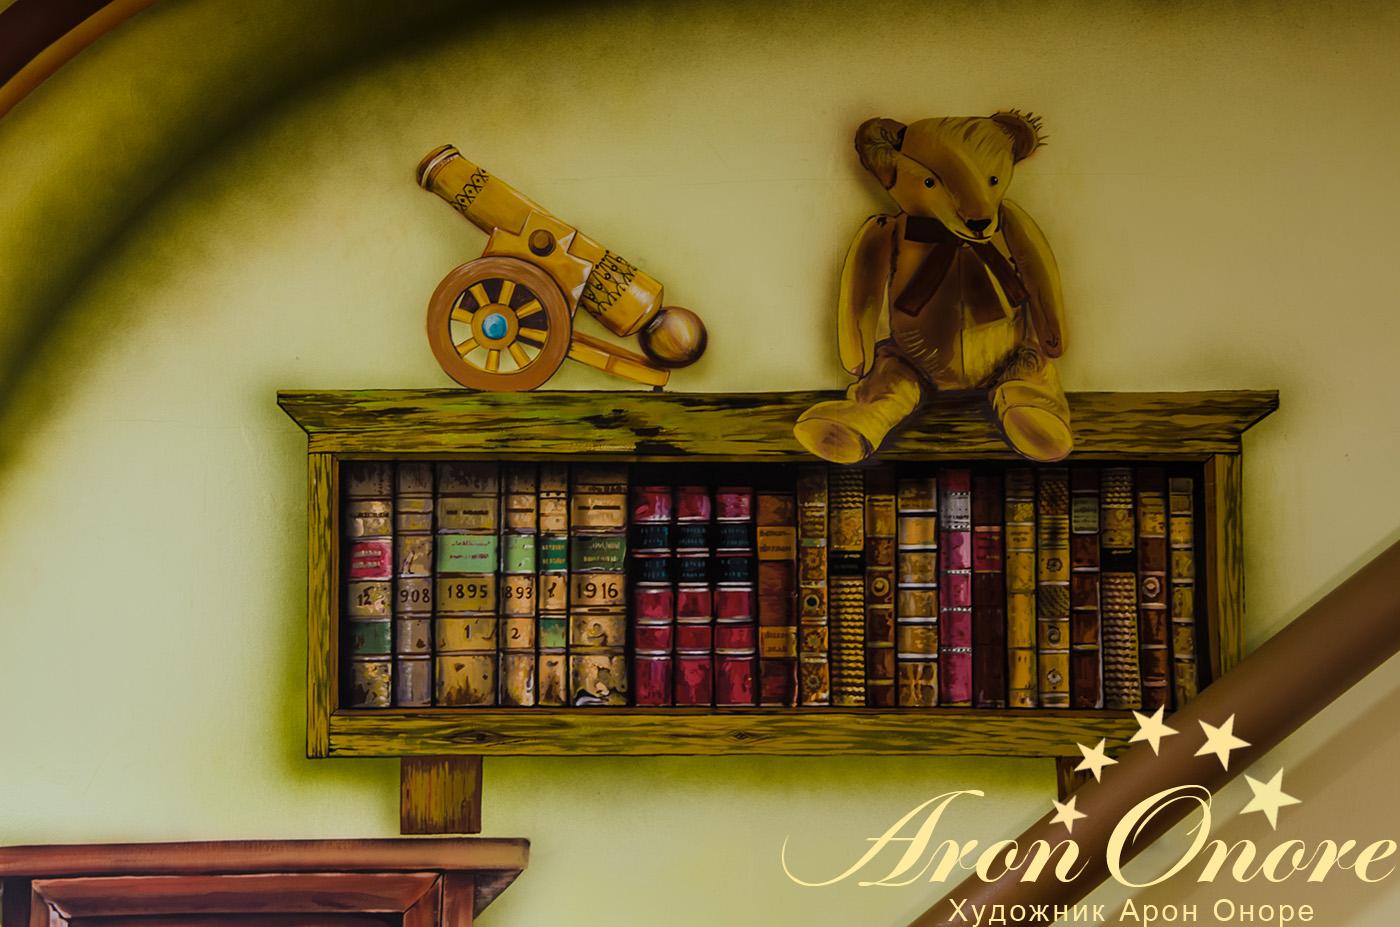 Роспись детской комнаты: полка со старинными книгами и мягкой игрушкой